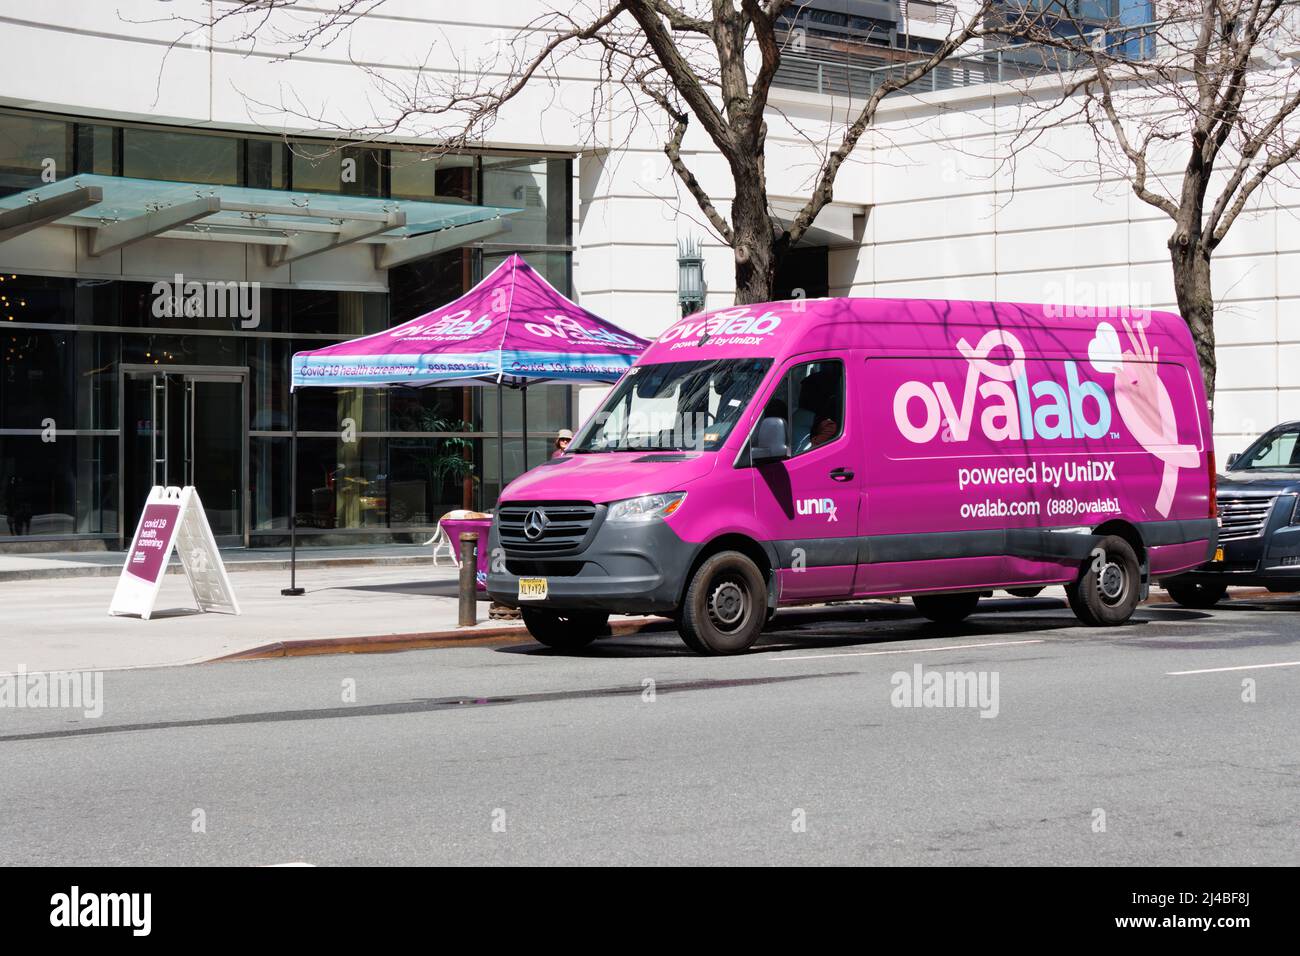 Una furgoneta y tienda de campaña en la acera de Ovalab, una clínica móvil de pruebas médicas que enfoca específicamente sus pruebas en los problemas de salud de las mujeres en Nueva York y Foto de stock